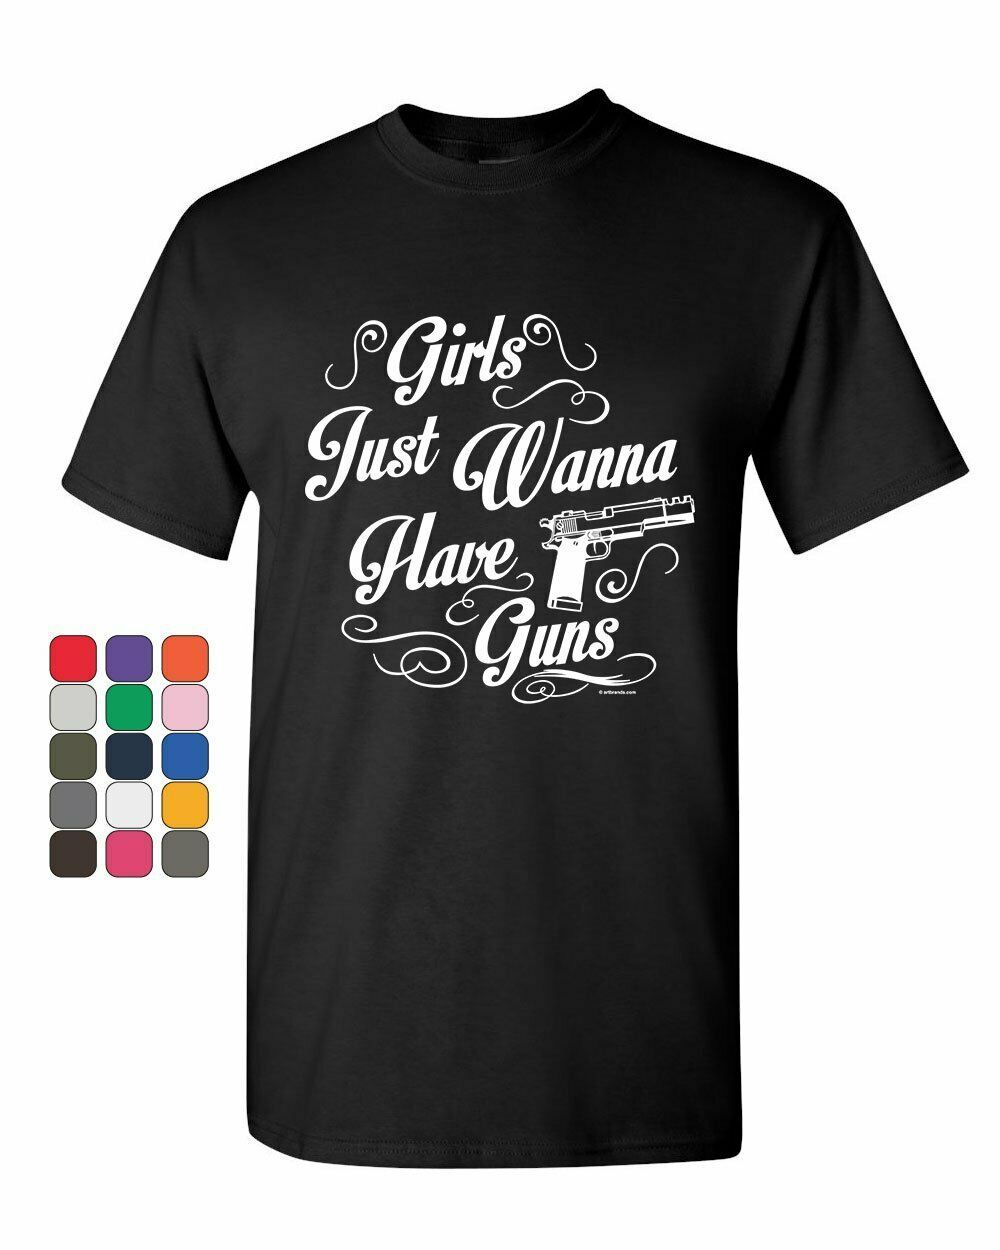 Girls Just Wanna Have Guns T-Shirt Girls With Guns 2nd Amendment Mens Tee Shirt